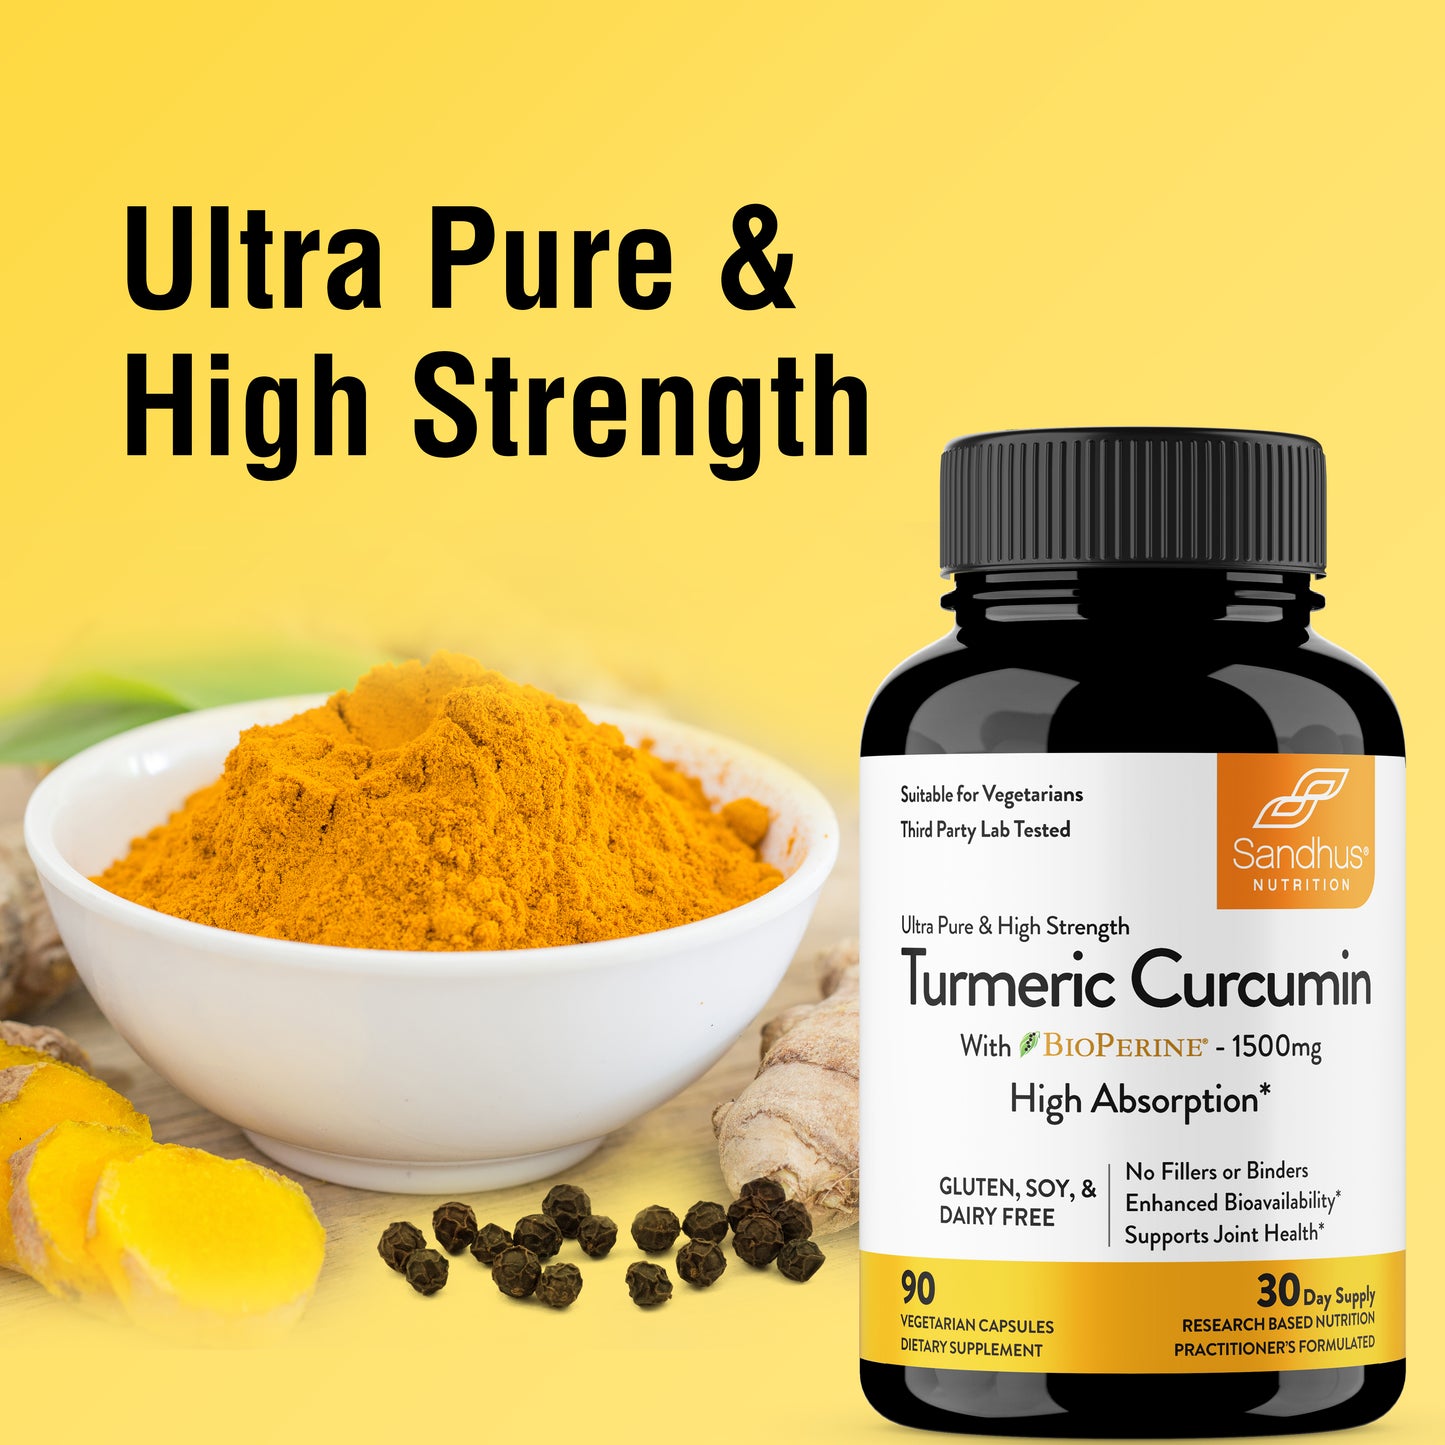 best curcumin supplement	best turmeric supplement	best joint supplement	immune support supplement	best antioxidant supplement